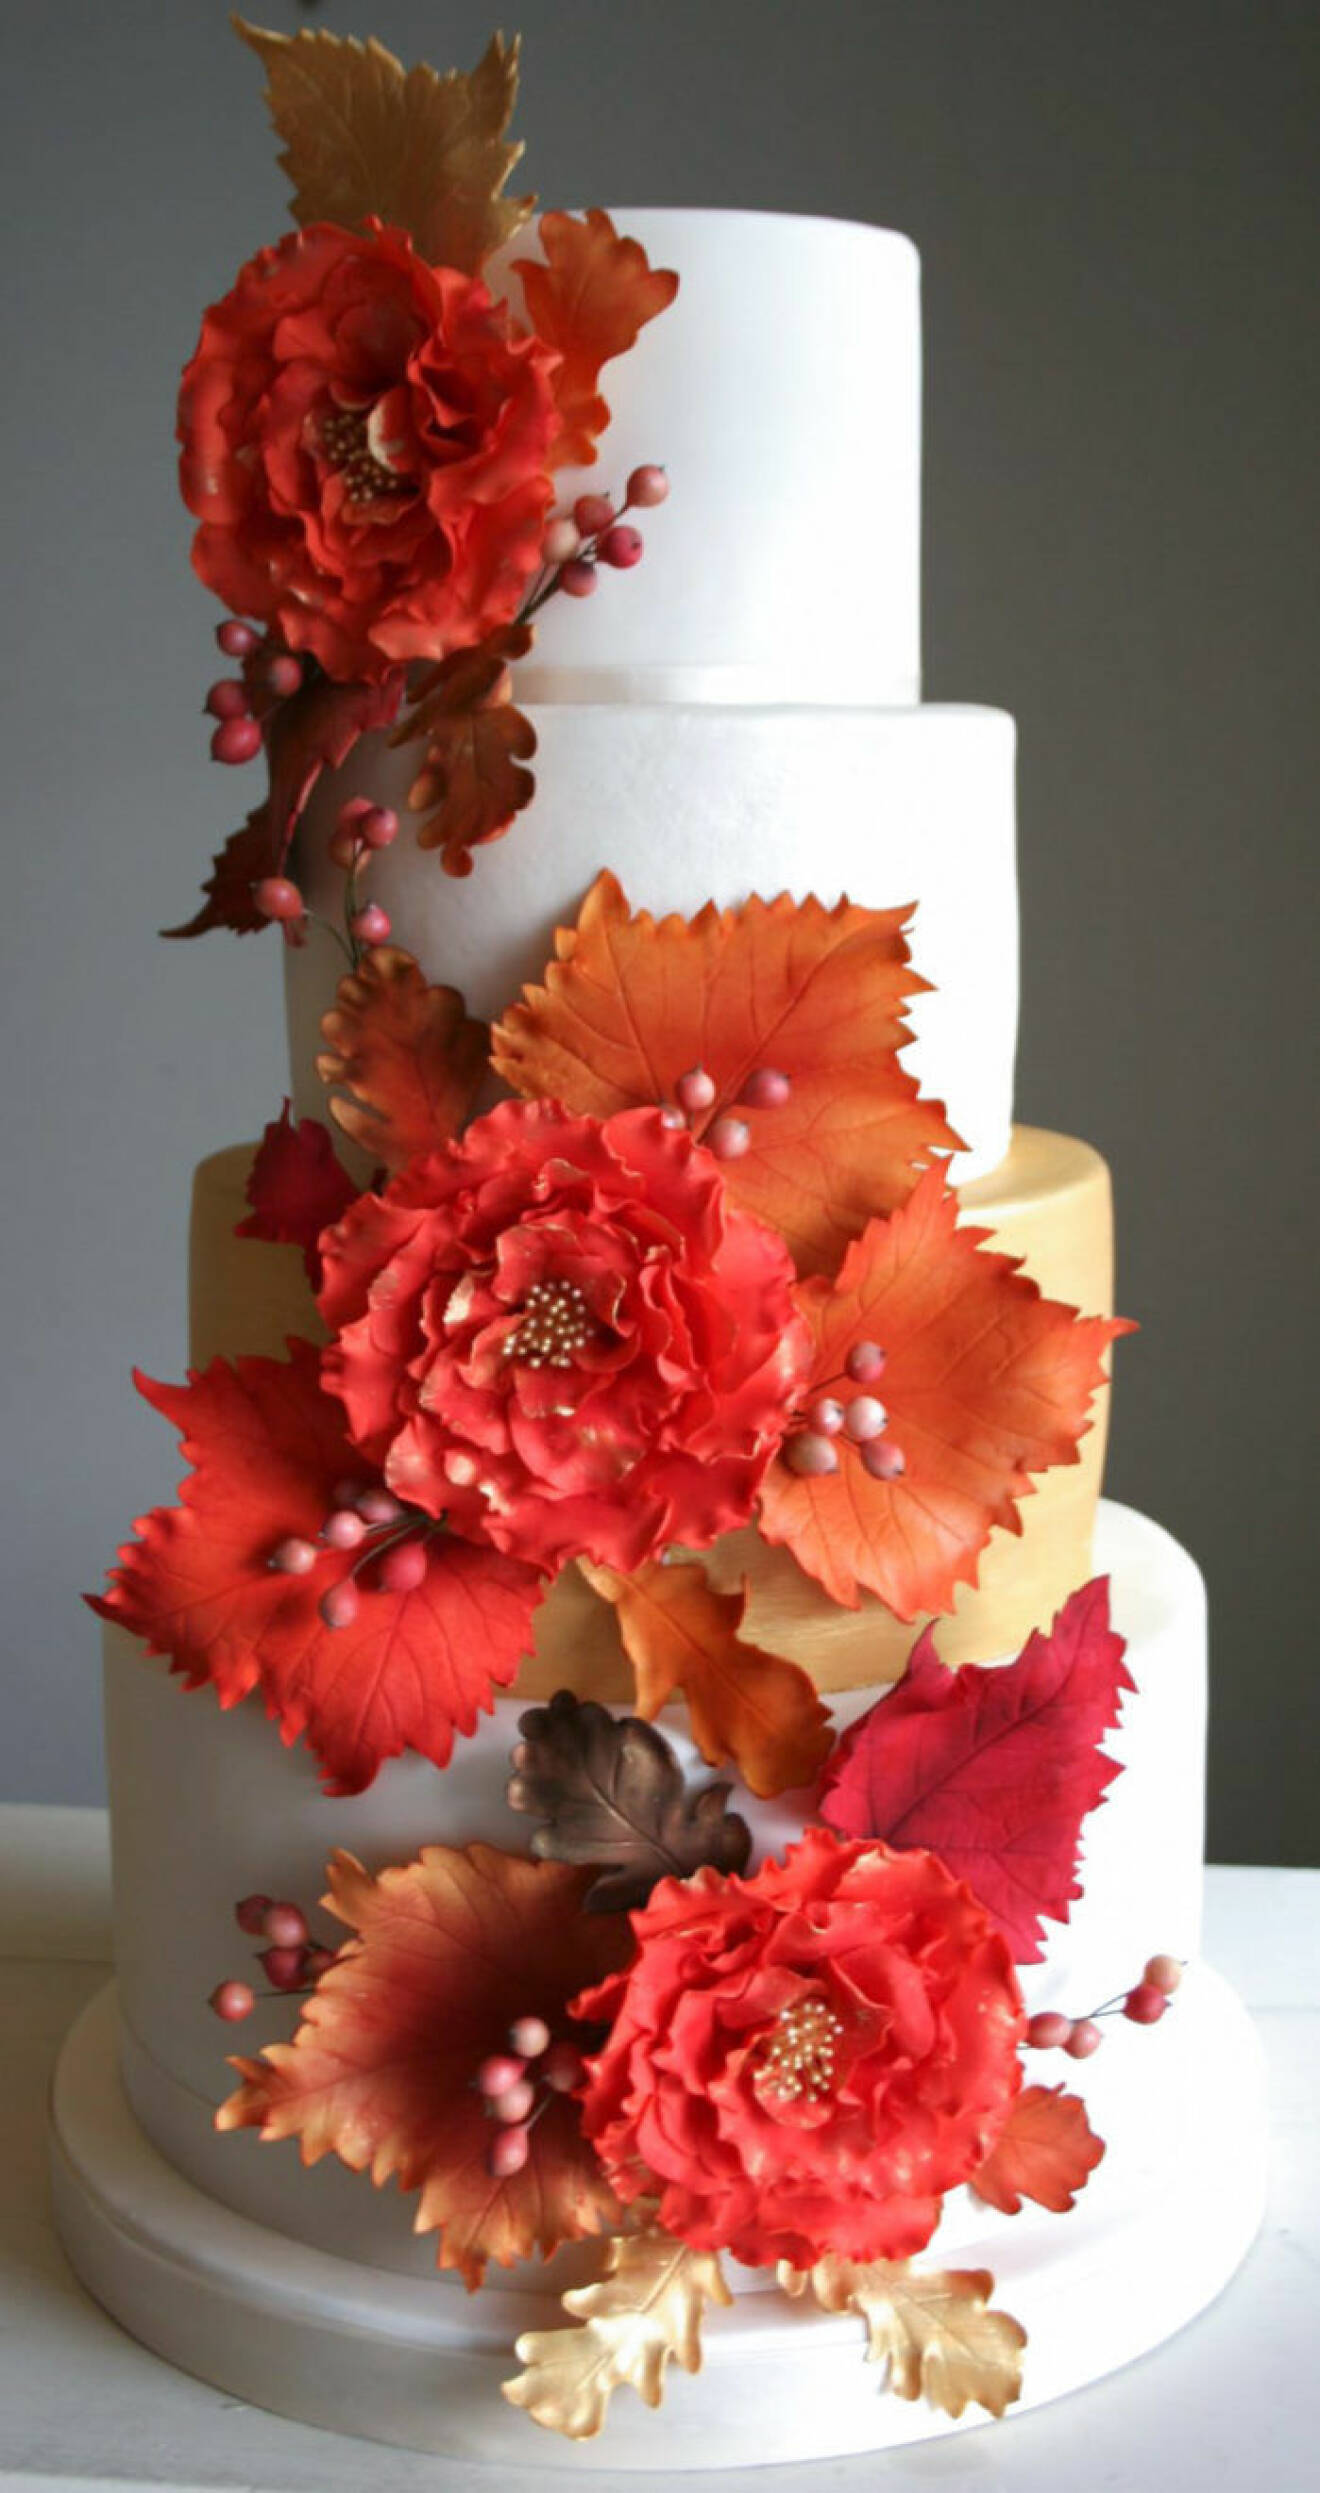 En enkel vit tårta med färgsprakande rött som dekoration